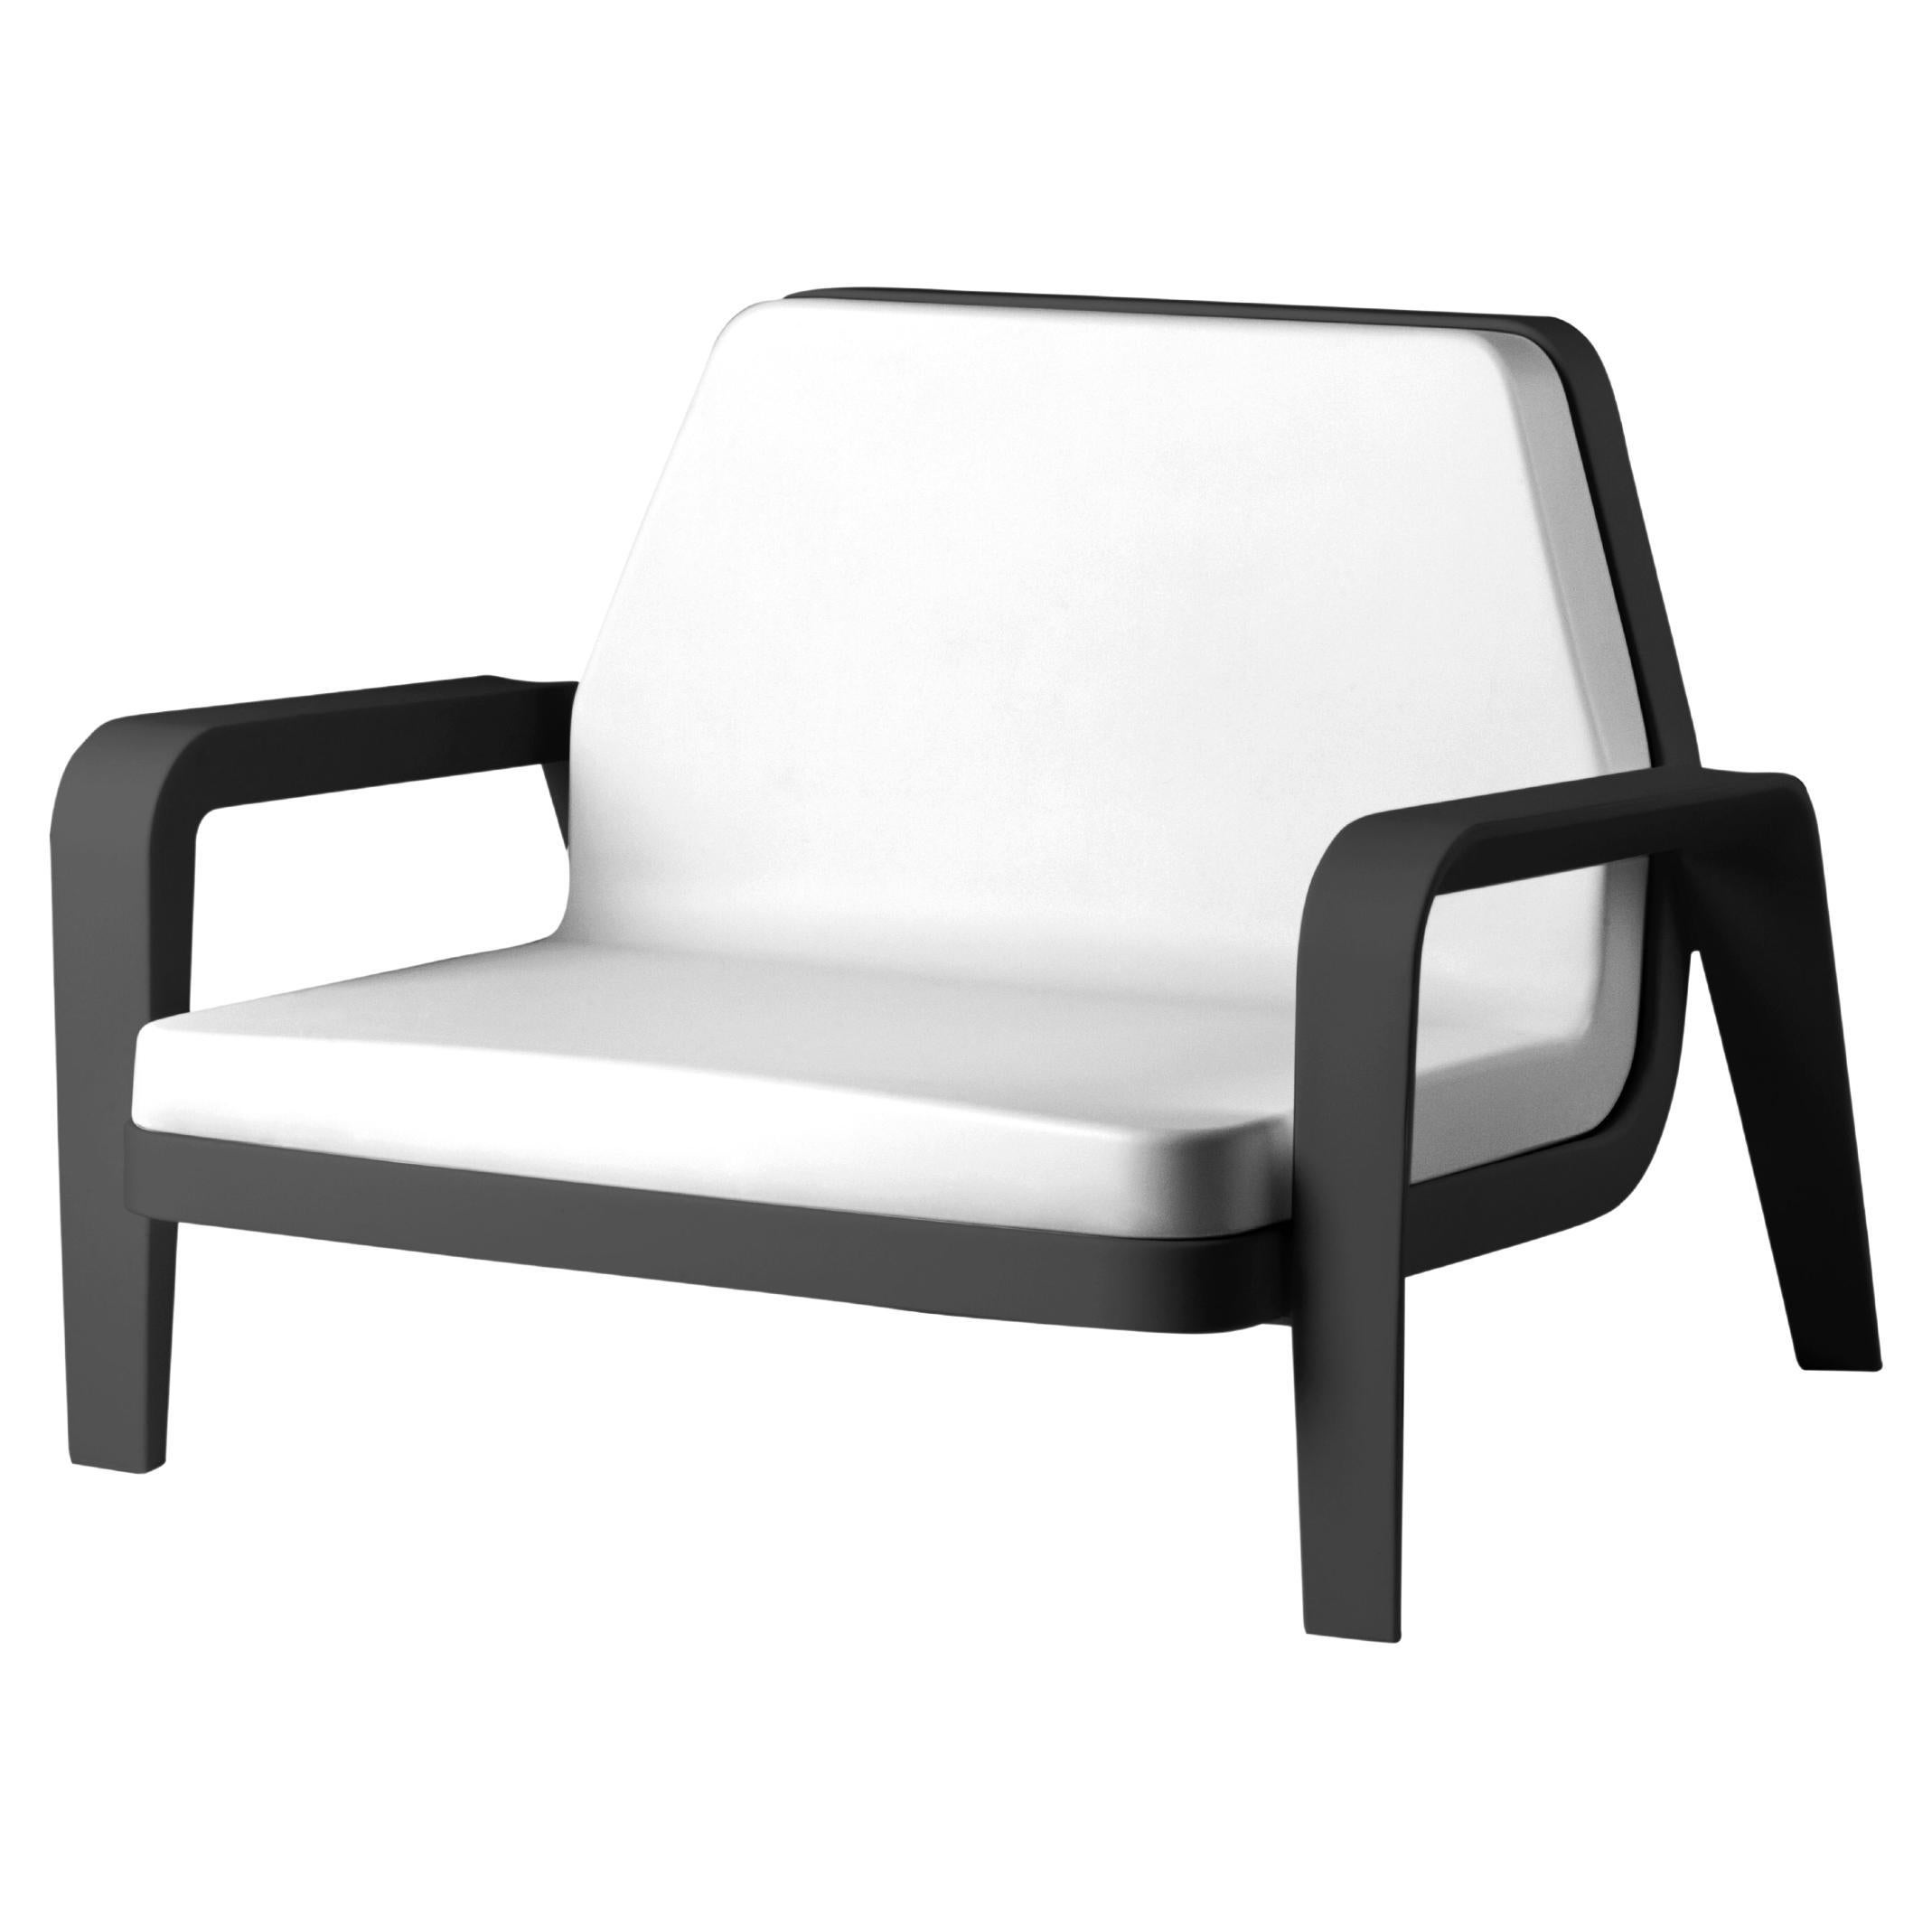 Slide Design America Sessel aus weichem weißem Stoff mit schwarzem Jet-Rahmen